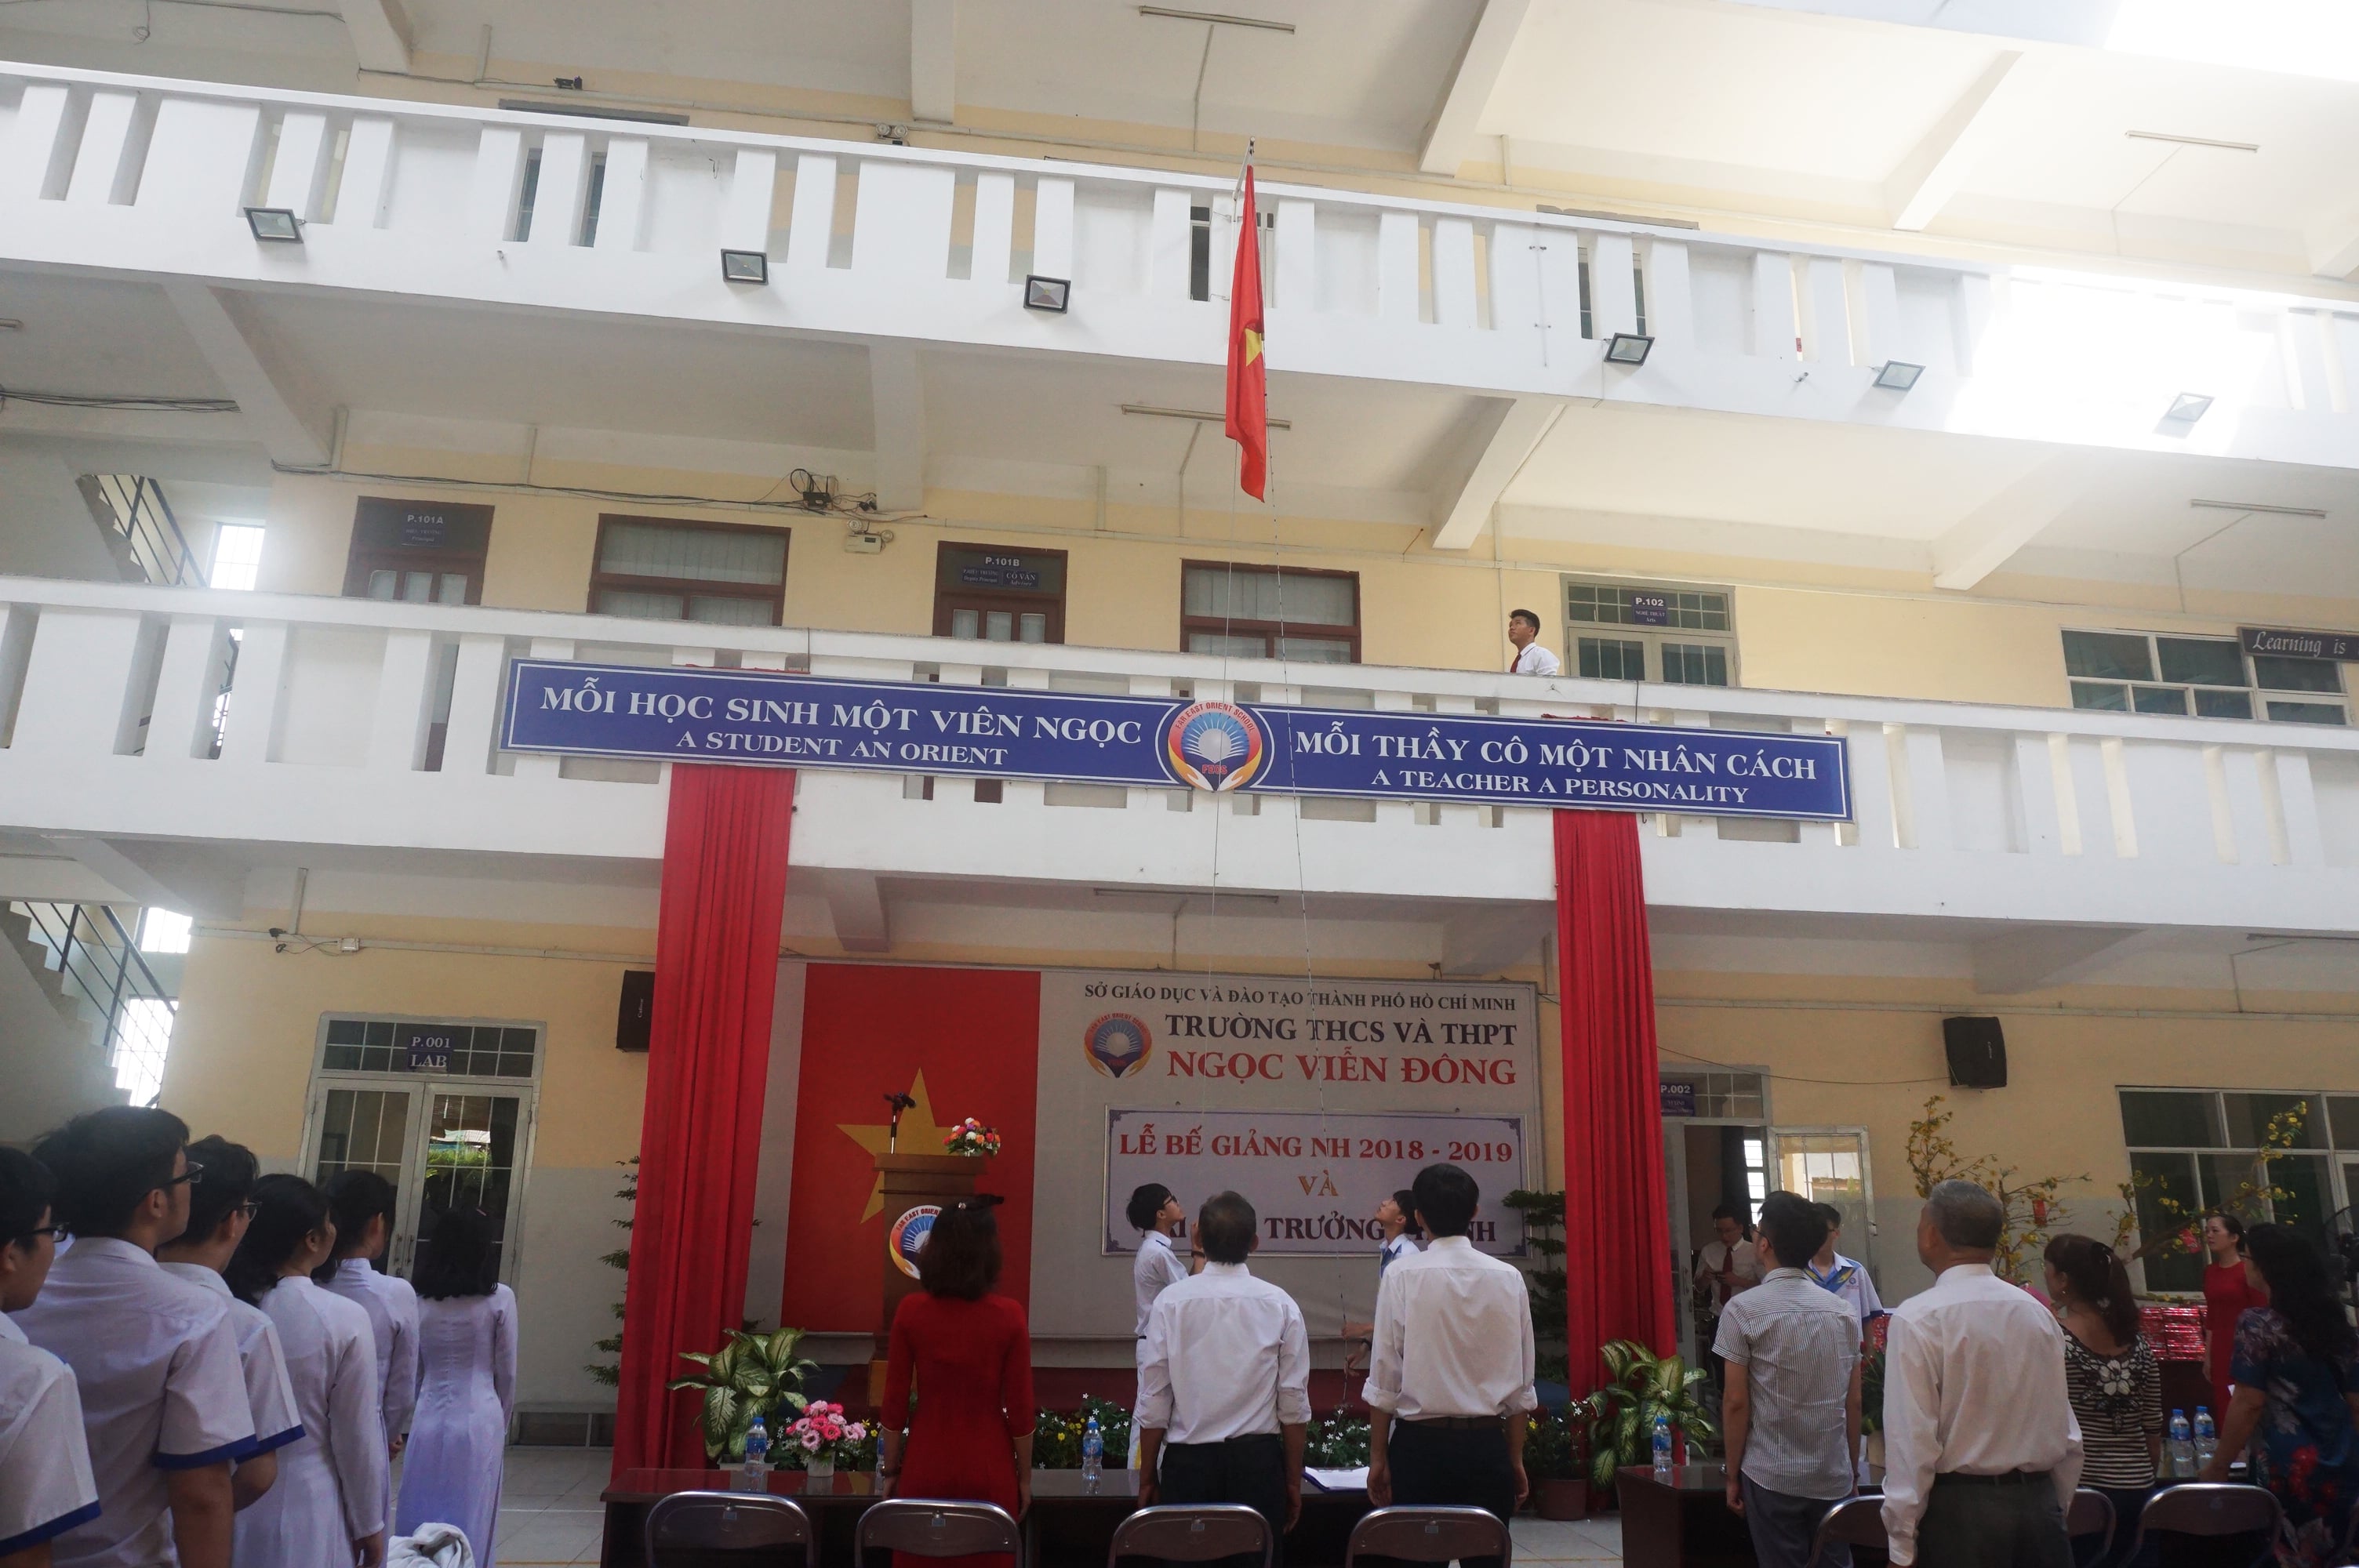 Nghi thức chào cờ trong lễ bế giảng năm học 2018 - 2019 trường THCS và THPT Ngọc Viễn Đông